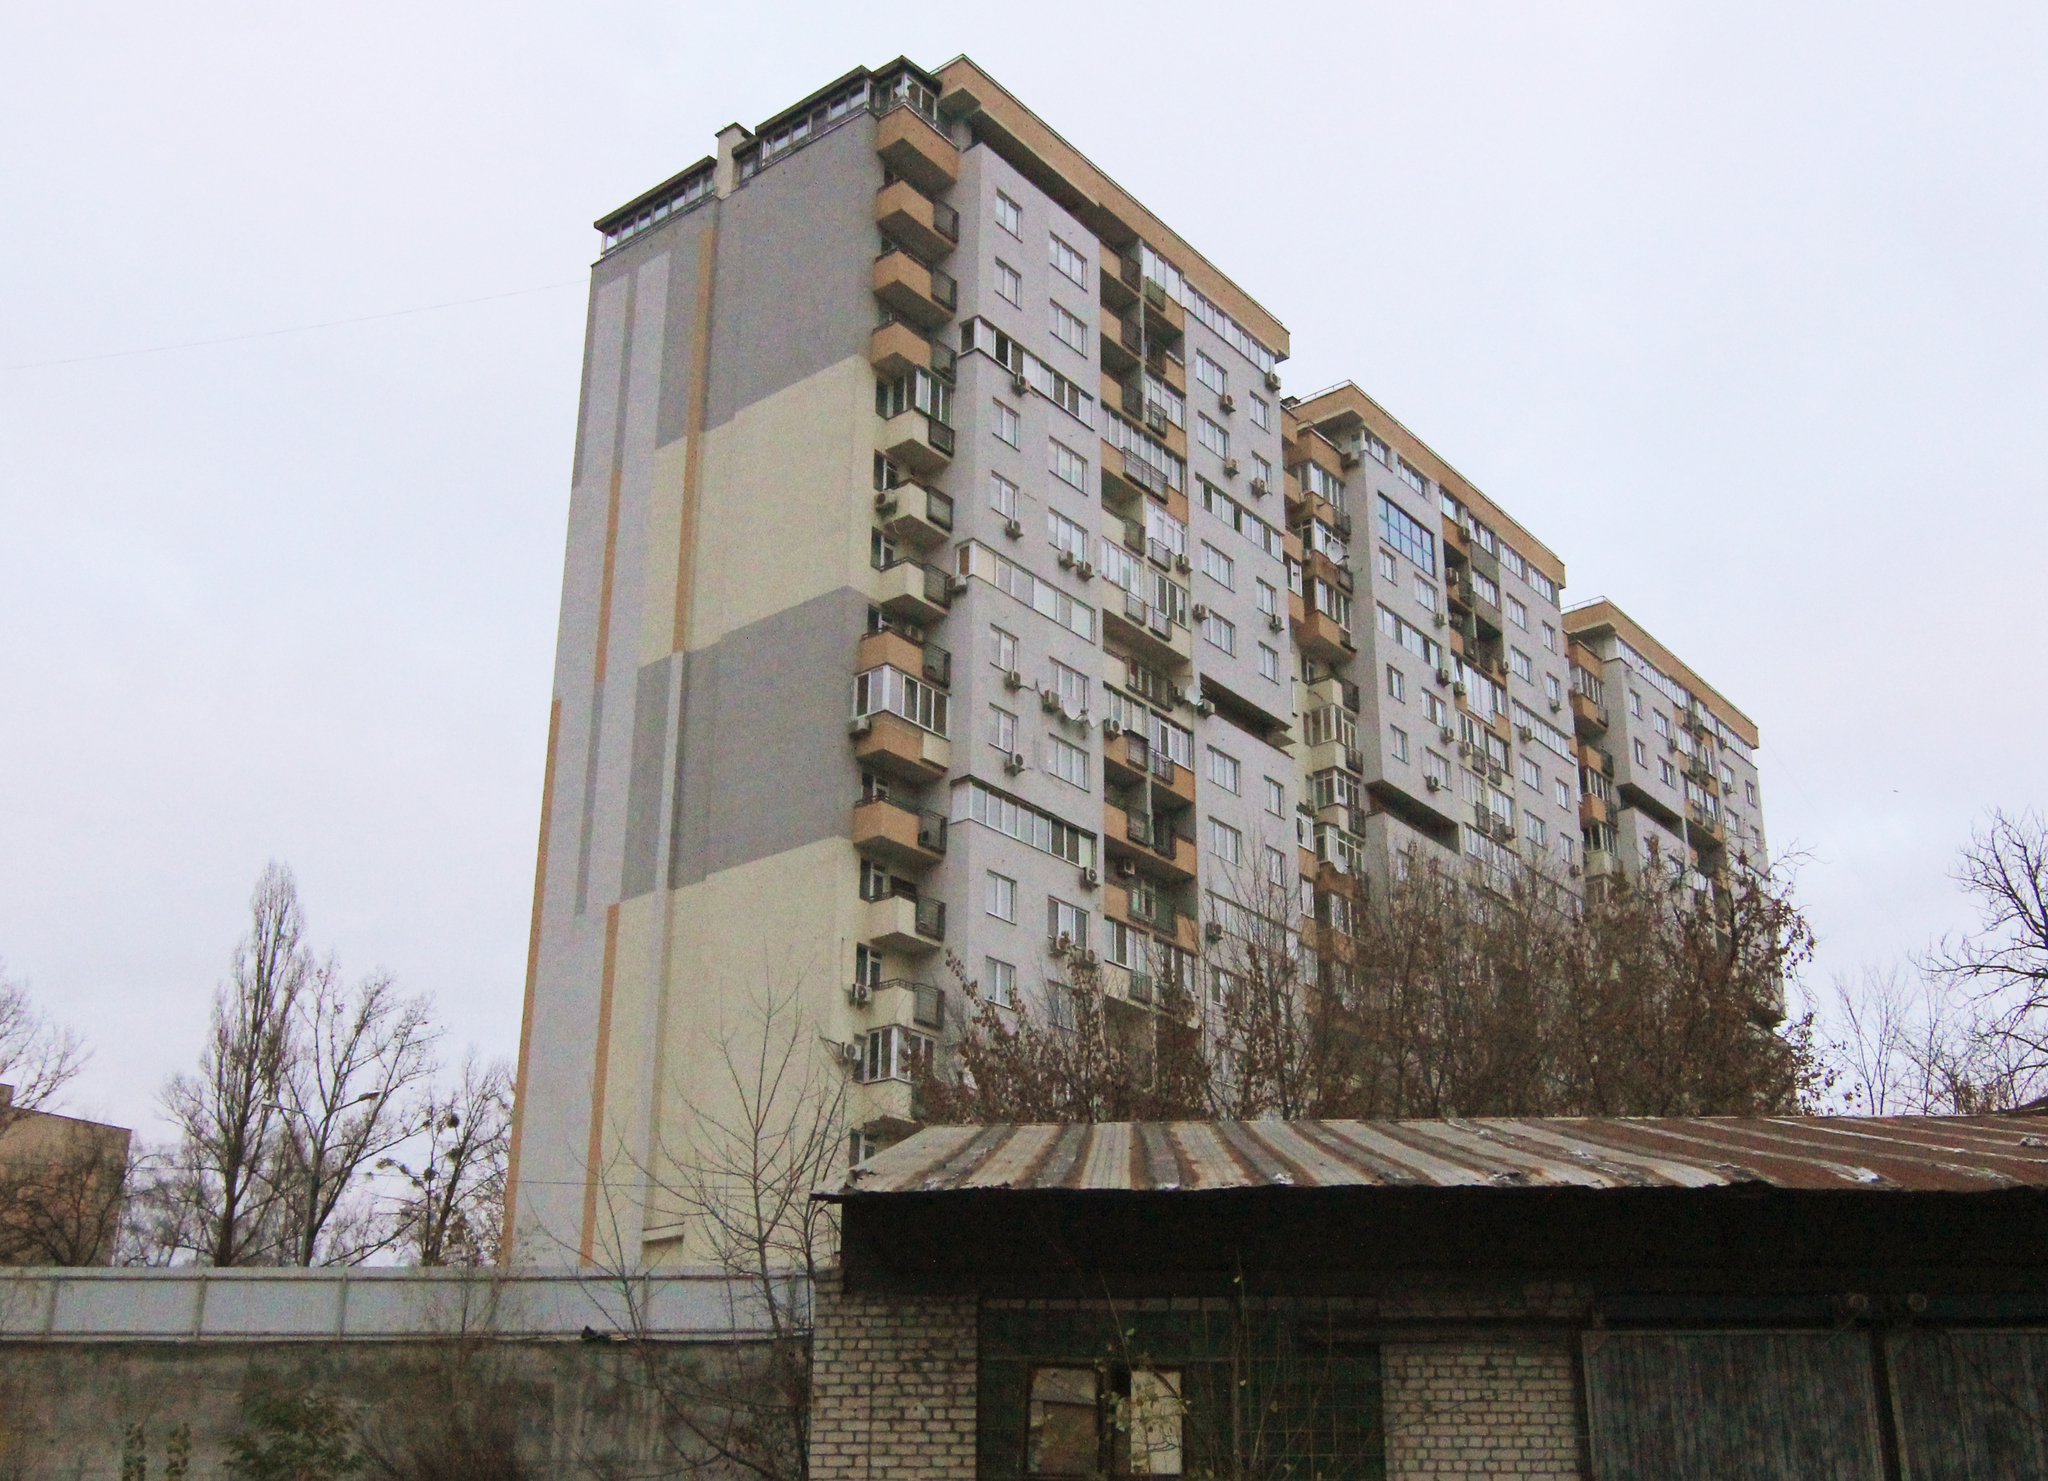 Киев, Борщаговская ул., 152А